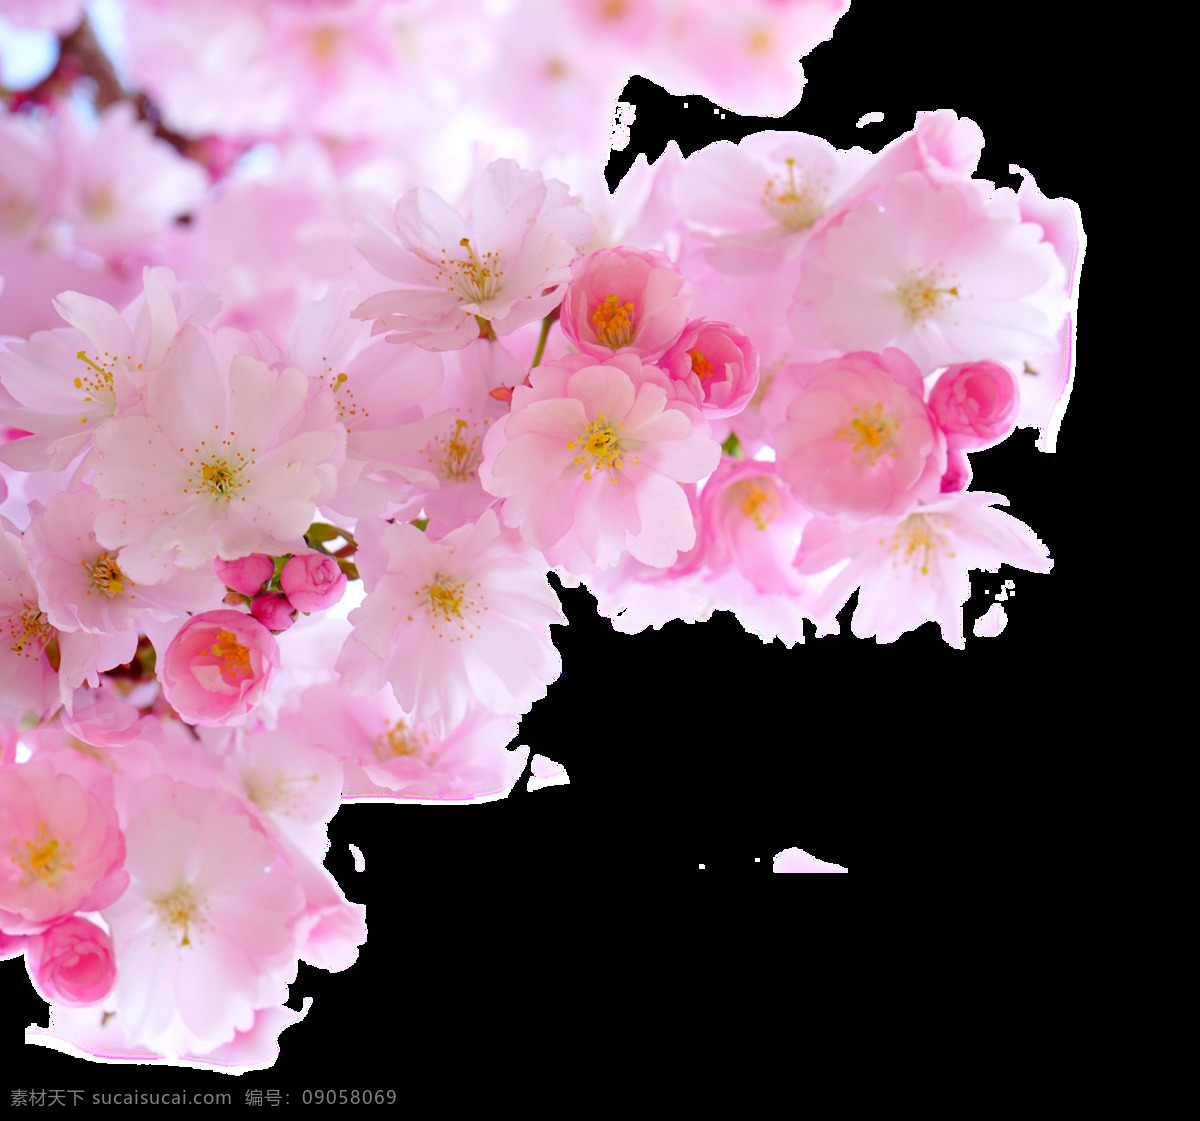 春季 盛放 中 娇艳 桃花 透明 植物 粉红色 花朵 树枝 透明素材 免扣素材 装饰图片